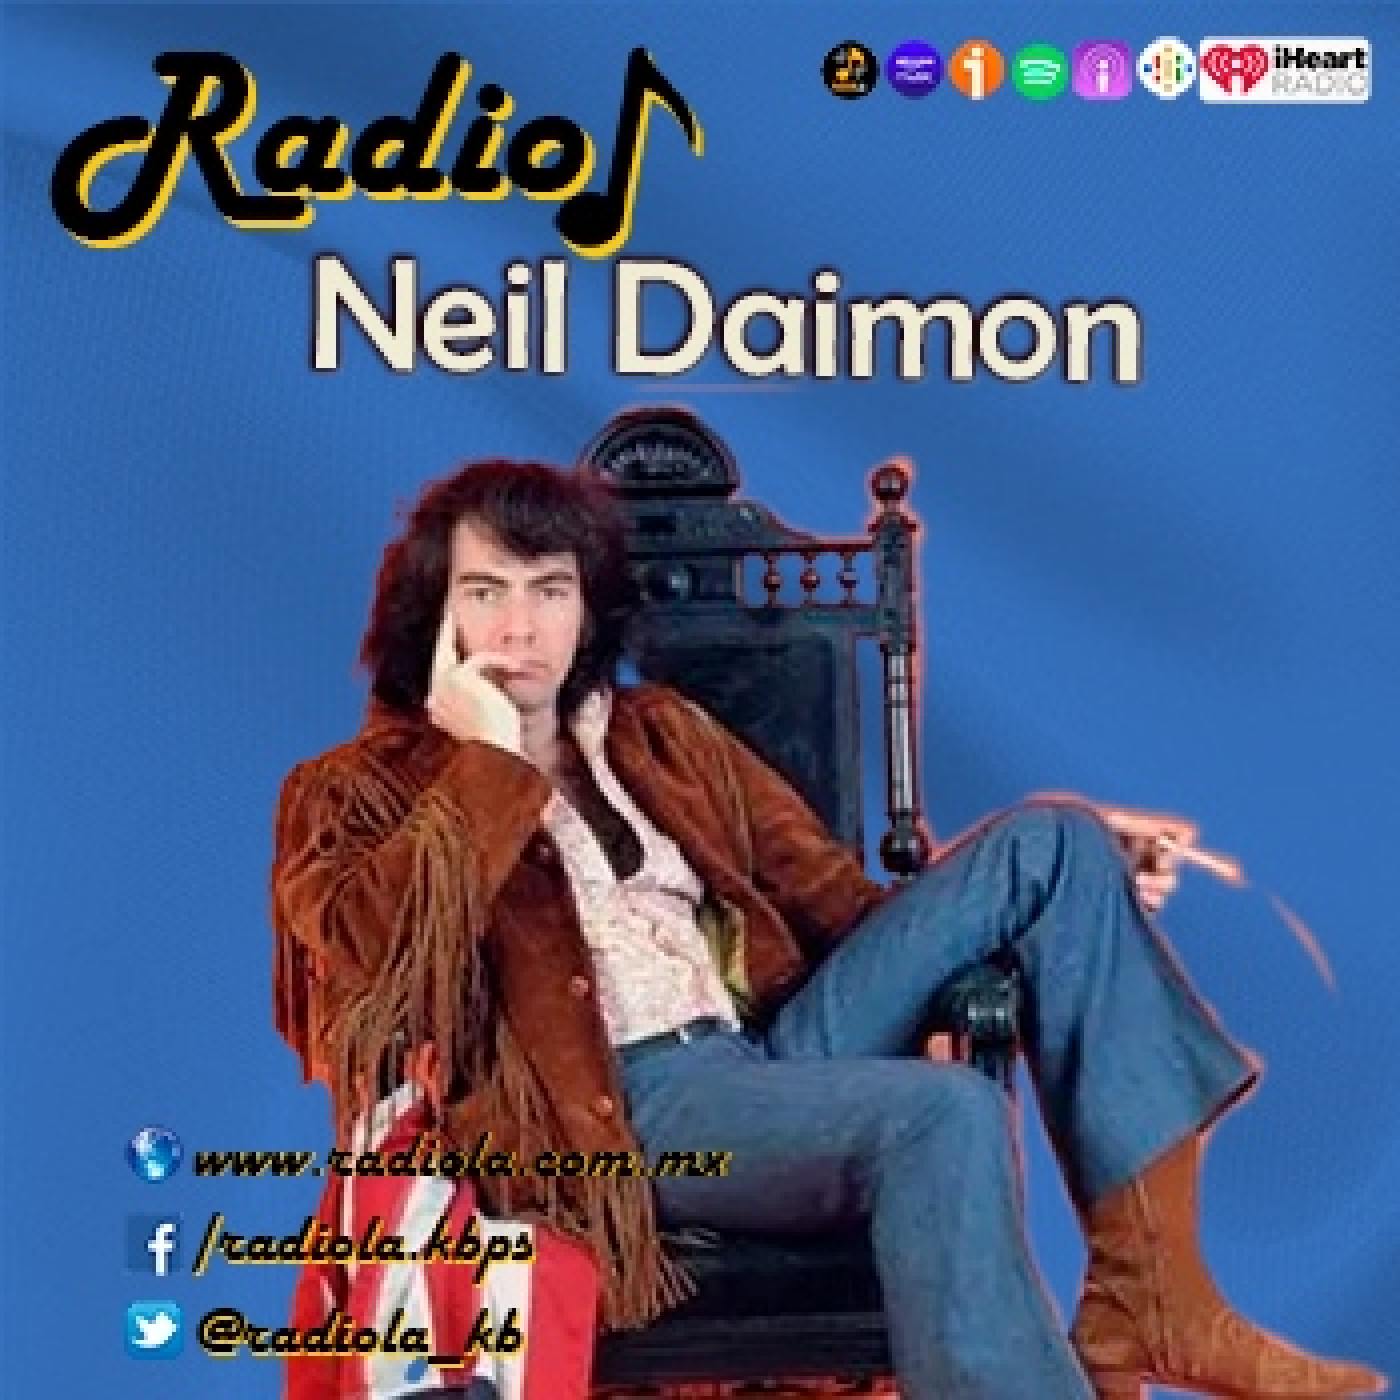 Neil Daimon